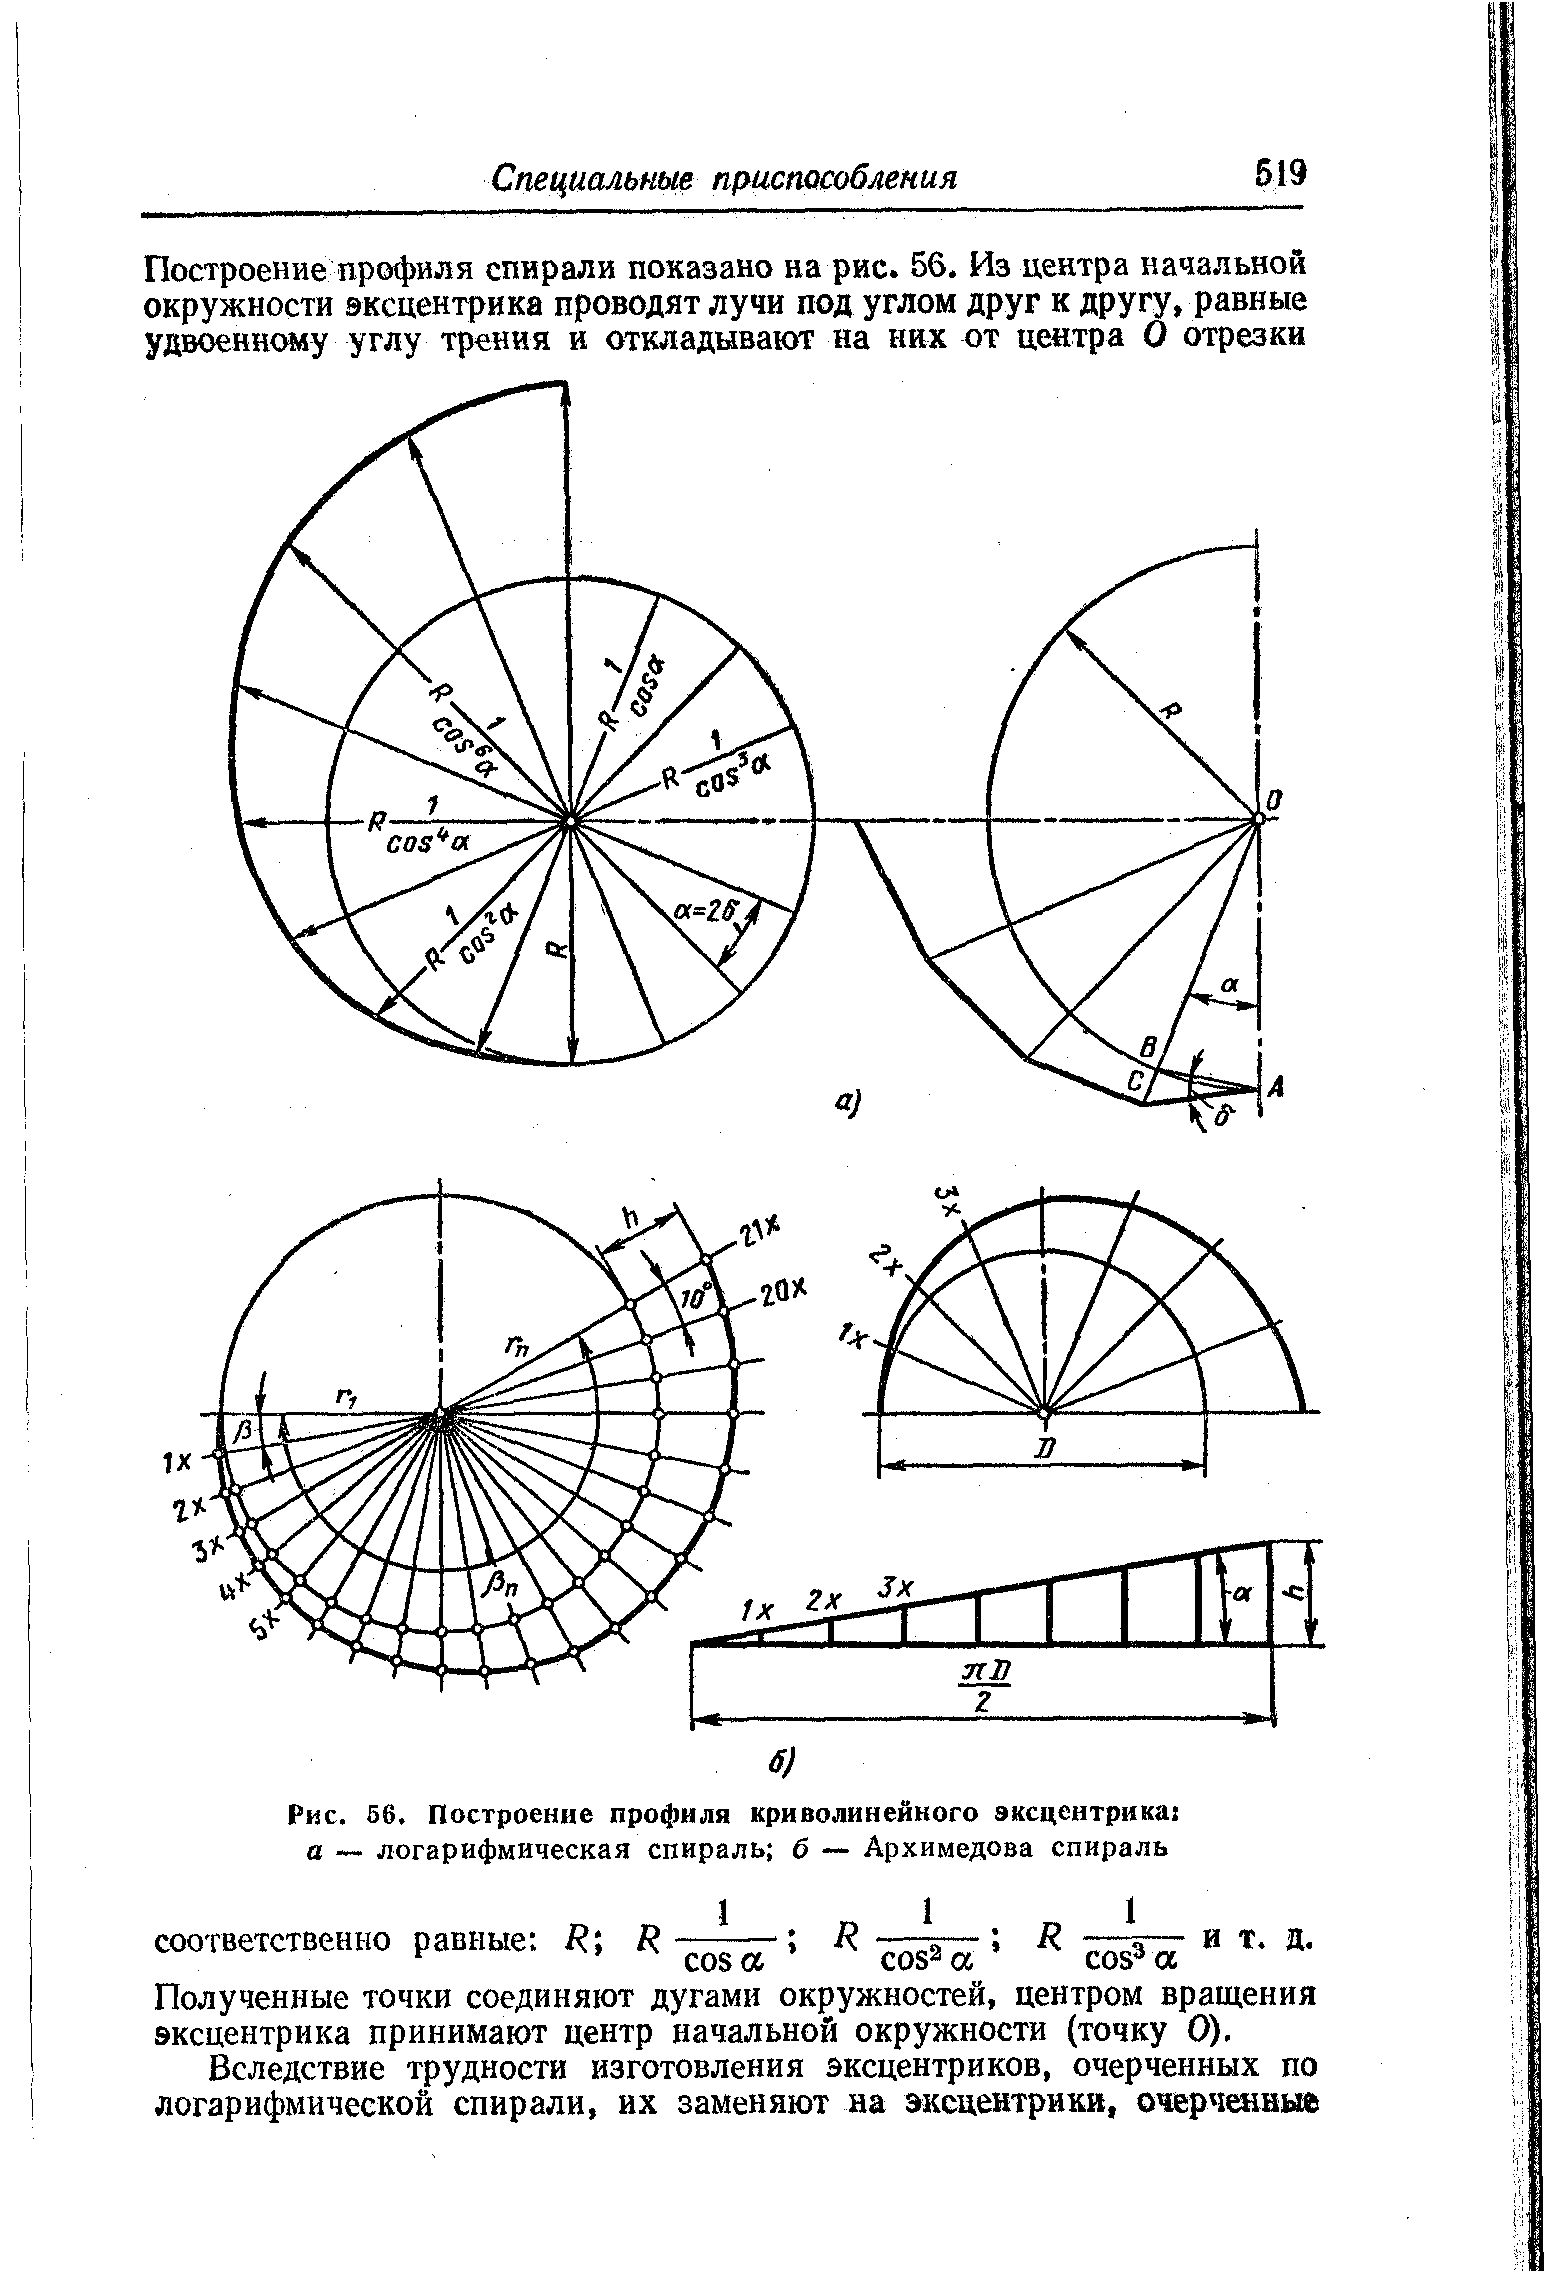 Рис. 56. Построение профиля криволинейного эксцентрика а — логарифмическая спираль б — Архимедова спираль
